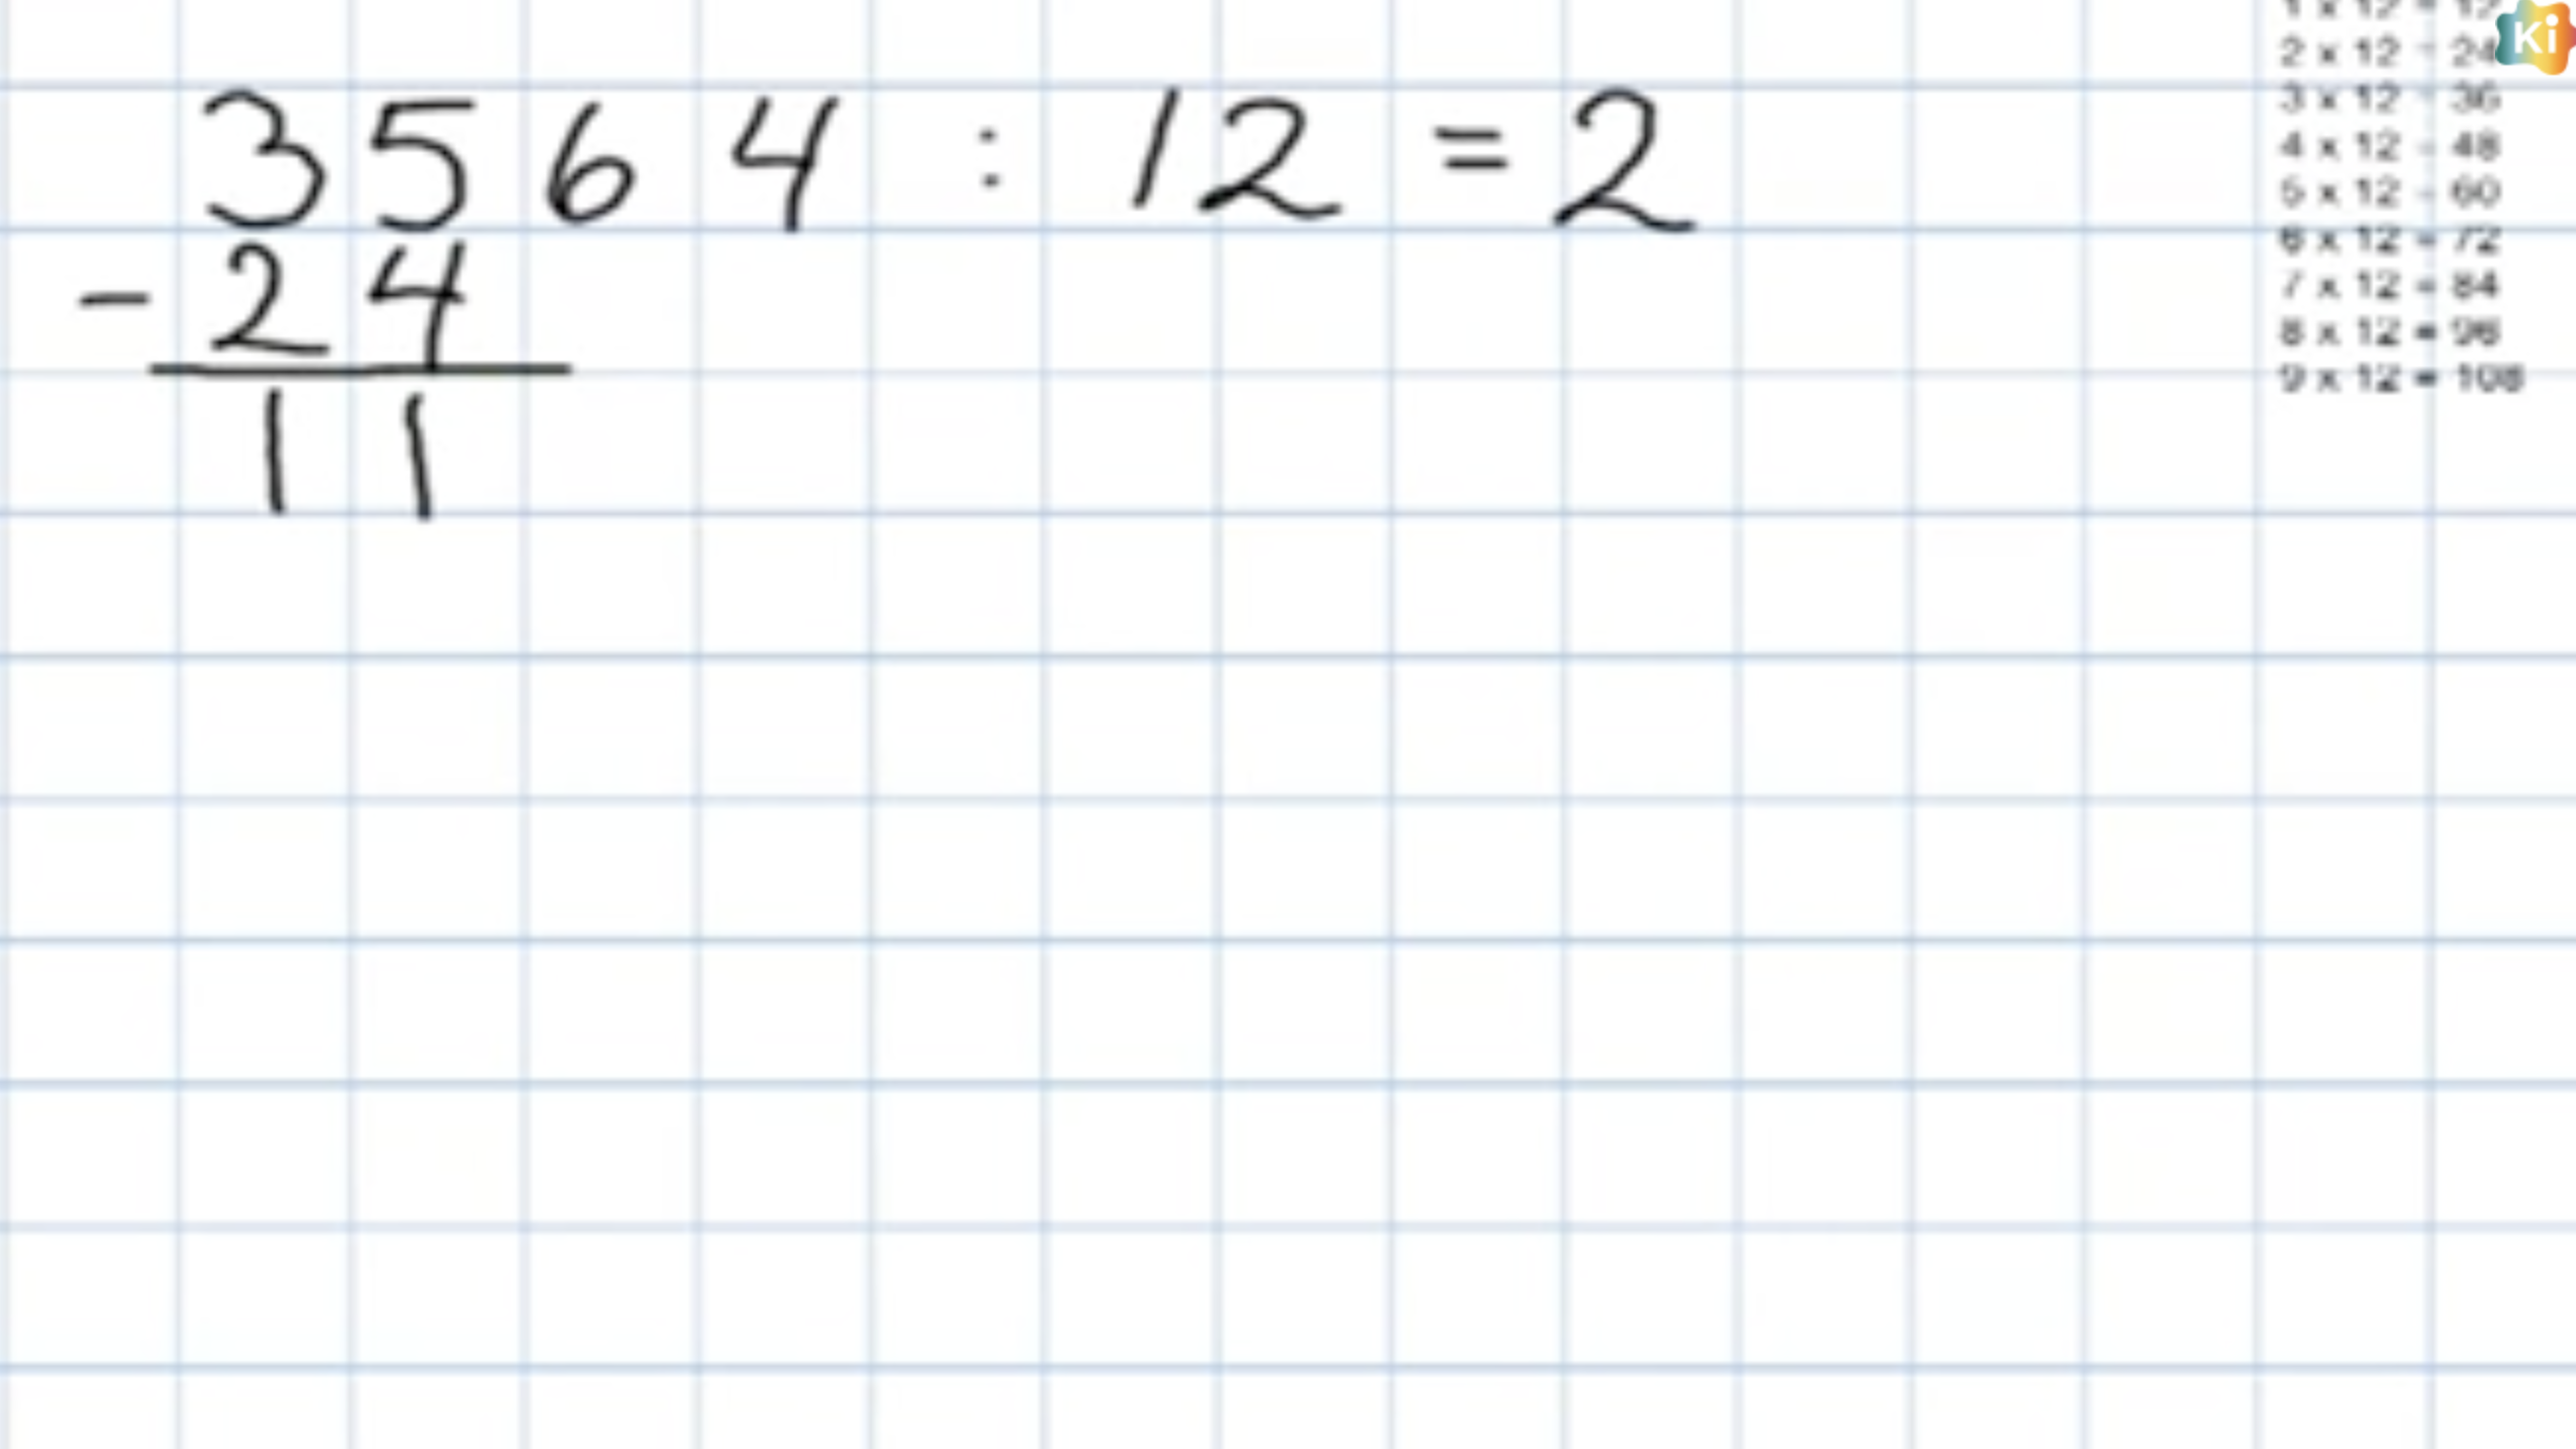 Divisjon: Bilde av regnestykket 3564 : 12, lær å dele med store tall - uten kalkulator.